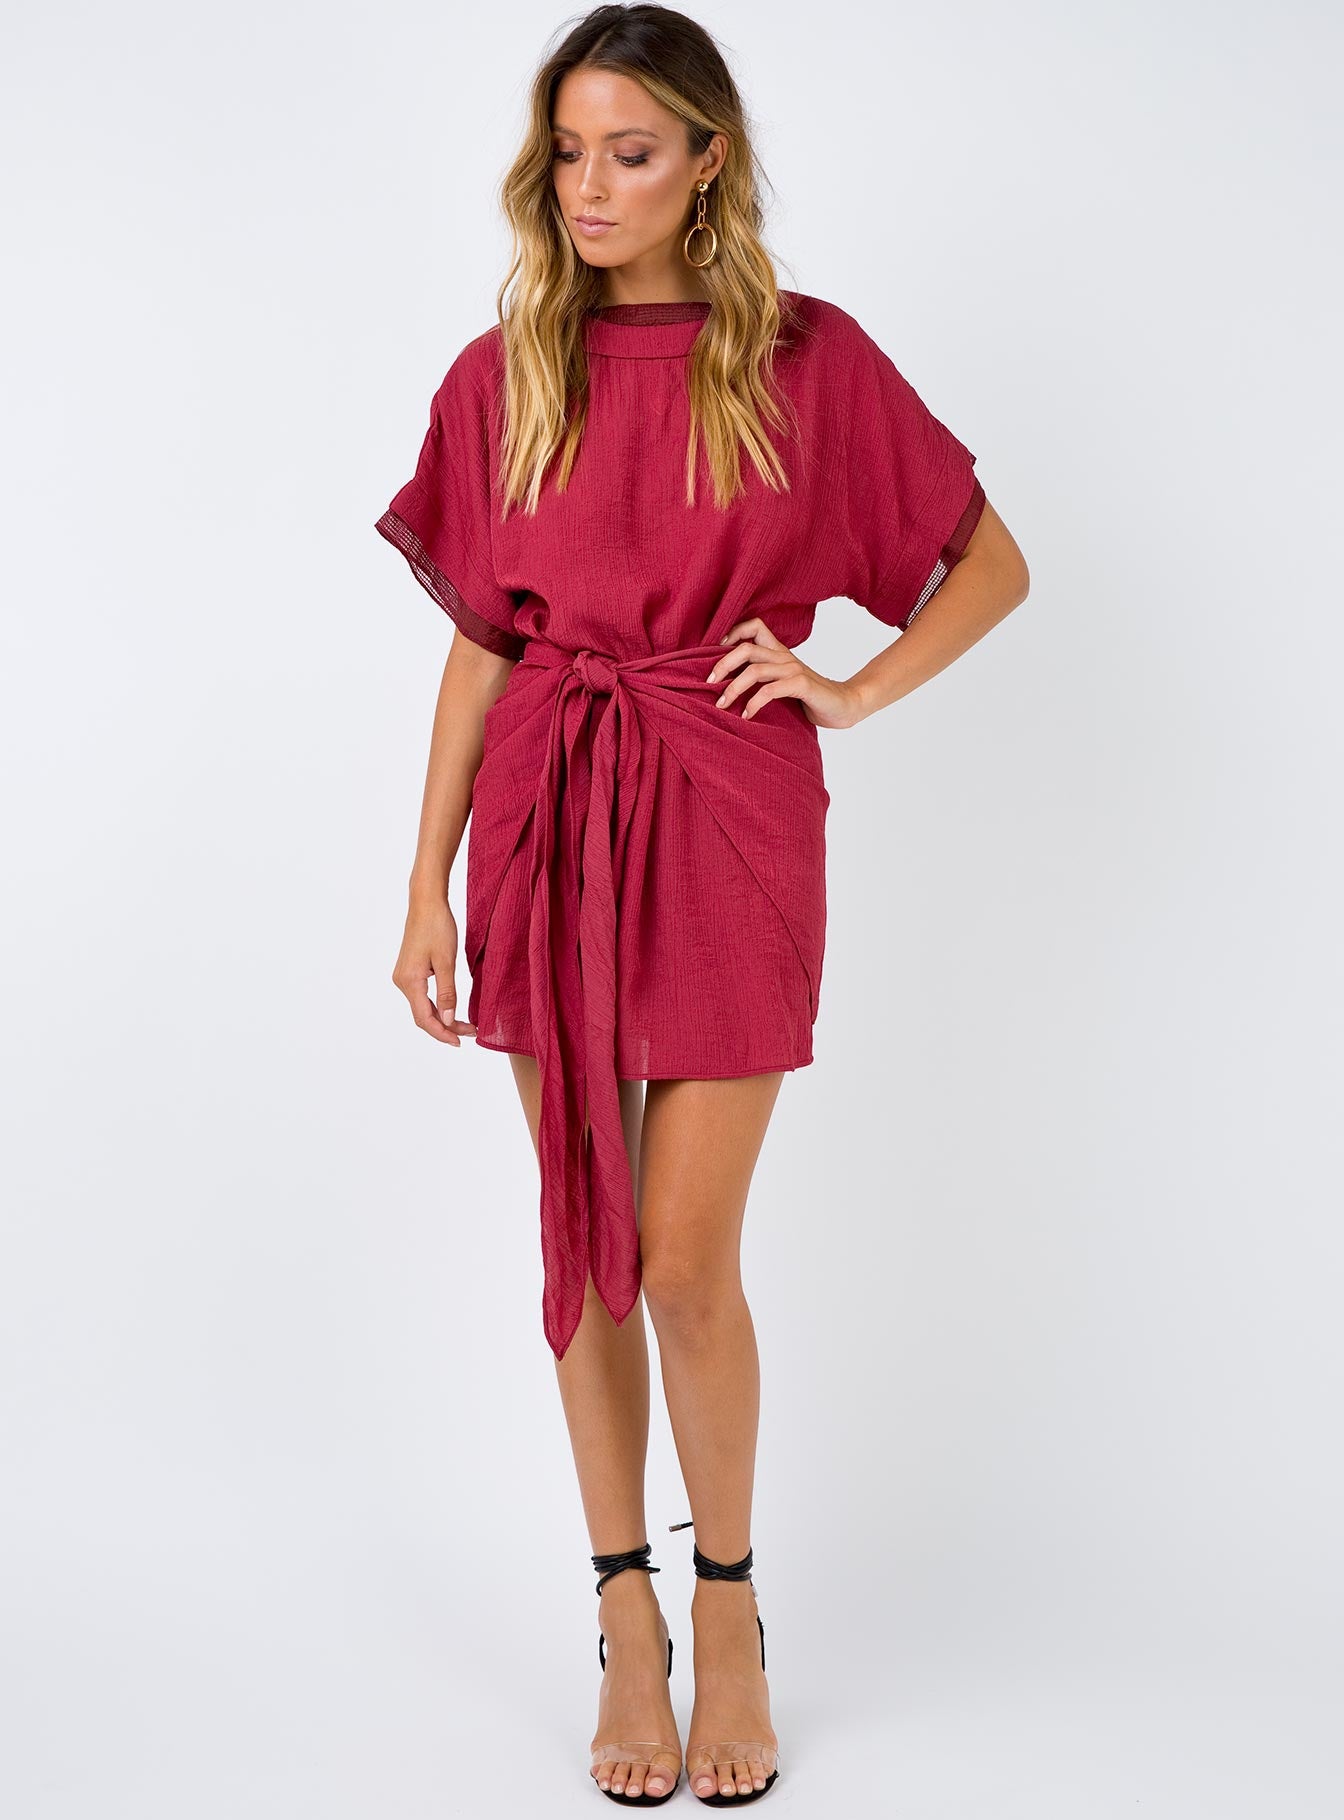 Princess Polly Red Wrap Dress Discount, 51% OFF | espirituviajero.com